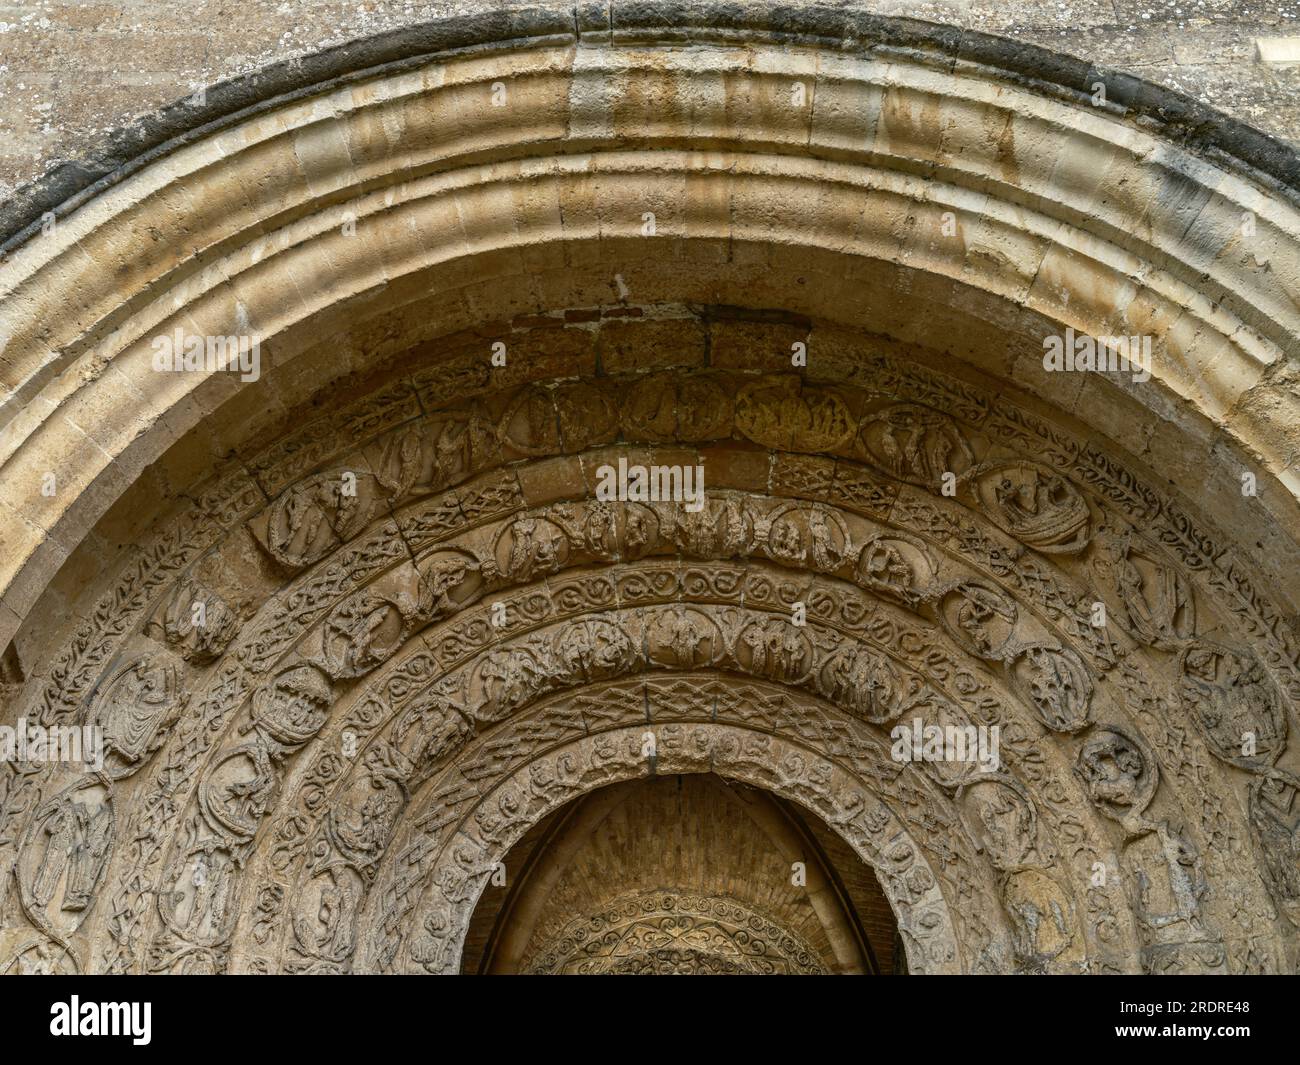 Une image haute résolution du porche de l'abbaye de Malmesbury montrant les sculptures altérées qui ornent l'entrée de l'ancien monastère bénédictin. Banque D'Images